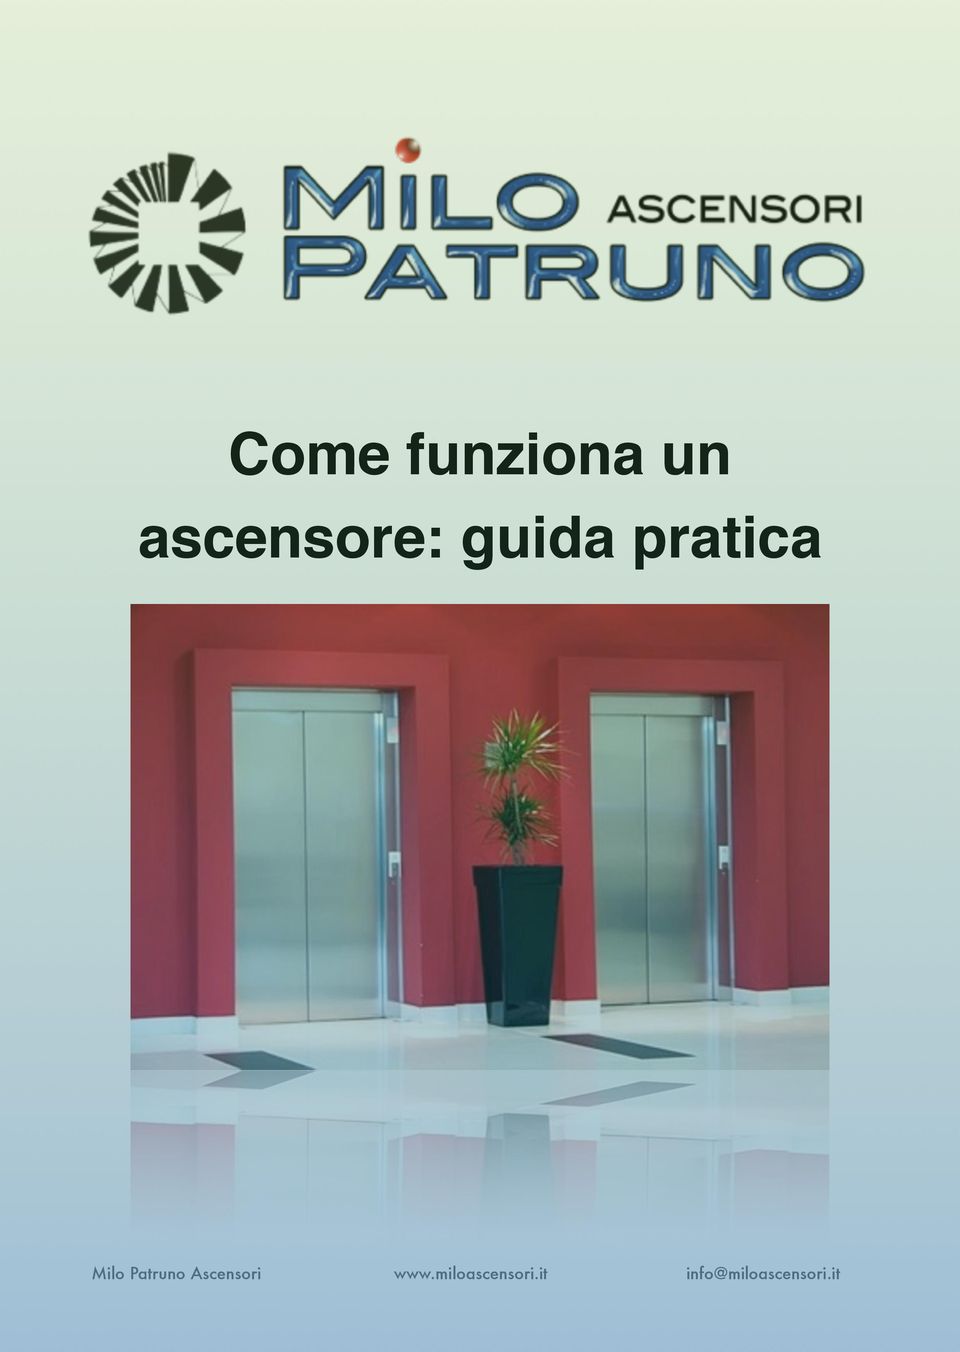 Milo Patruno Ascensori www.